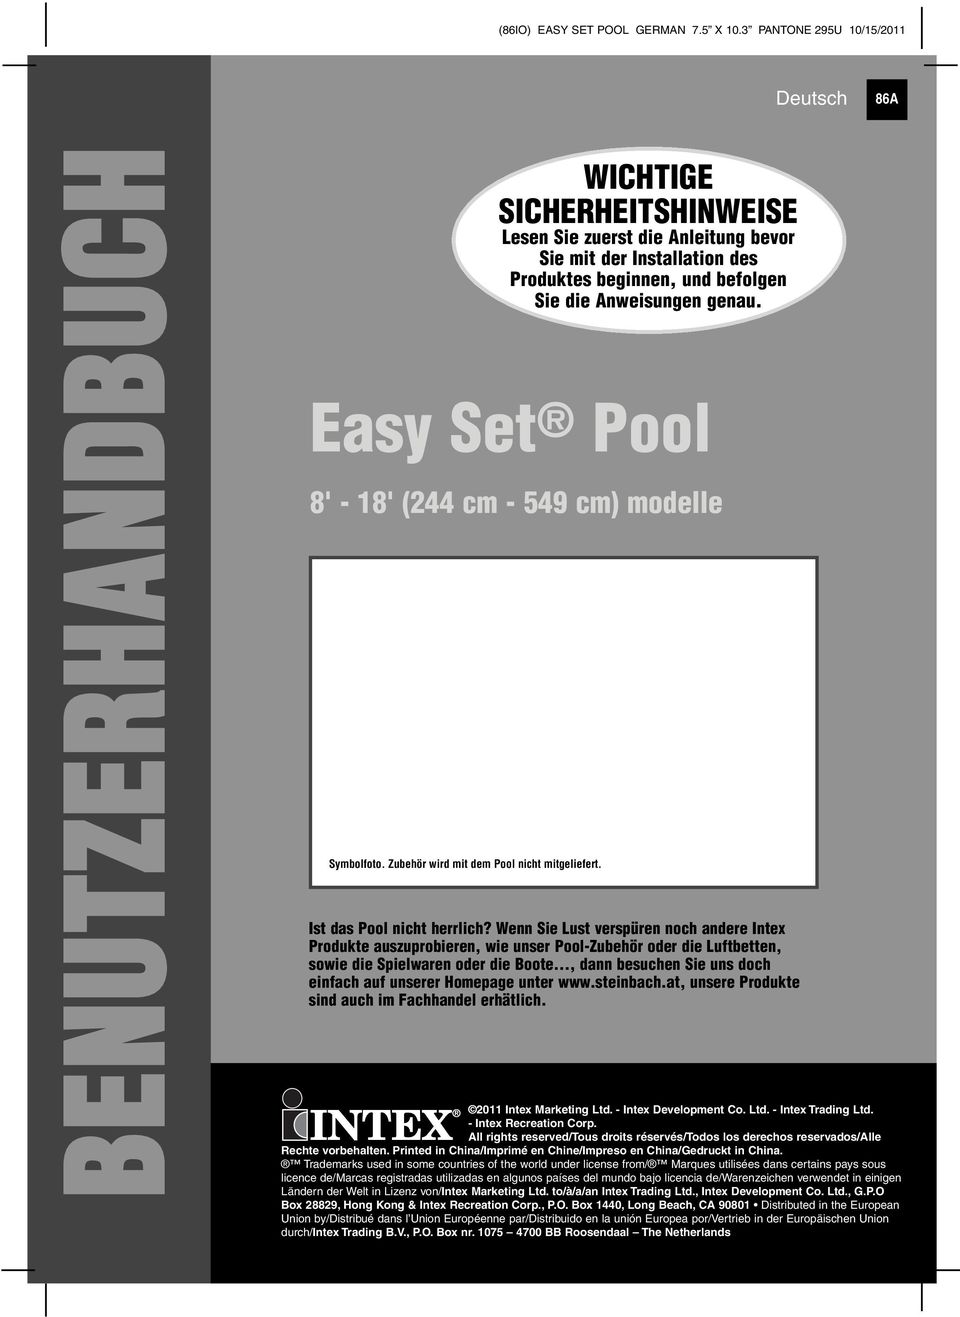 Easy Set Pool 8' - 8' (244 cm - 549 cm) modelle Symbolfoto. Zubehör wird mit dem Pool nicht mitgeliefert. Ist das Pool nicht herrlich?